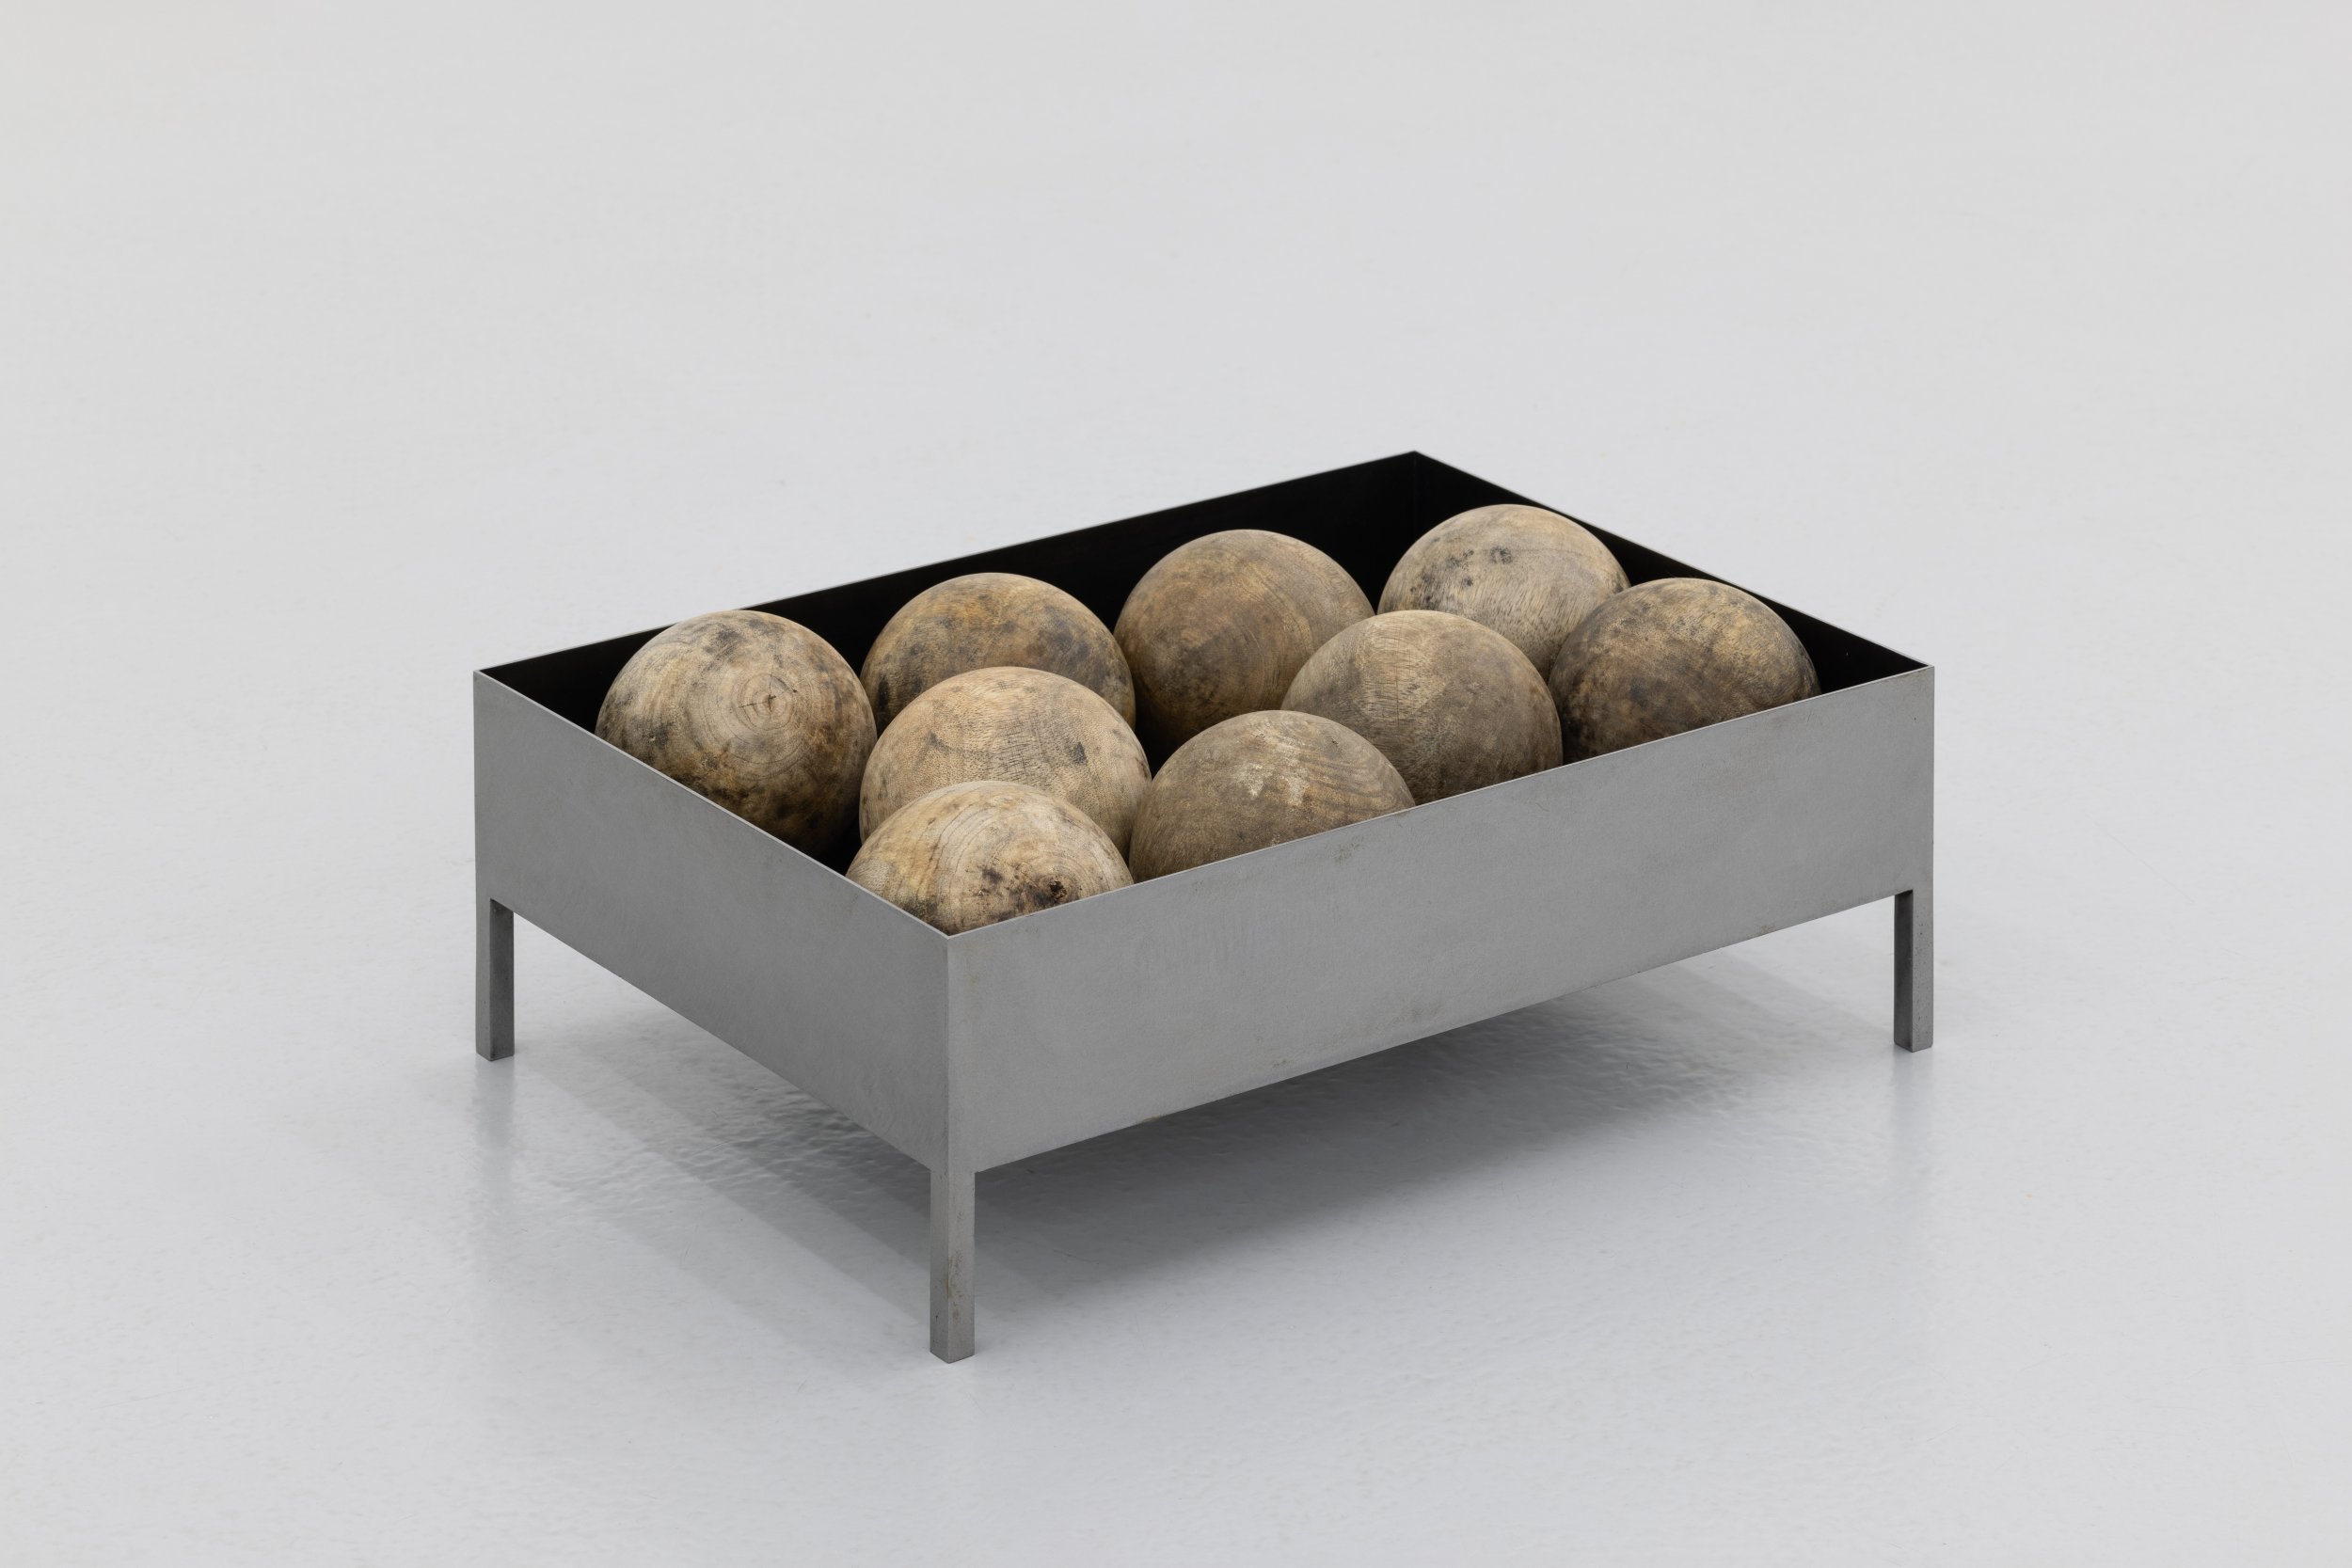 Daniel Gustav Cramer, CIV, 2023. Wooden spheres in box, metal box. Box 41 x 29 x 11. Unique. 9 antique wooden spheres gathered inside a box
